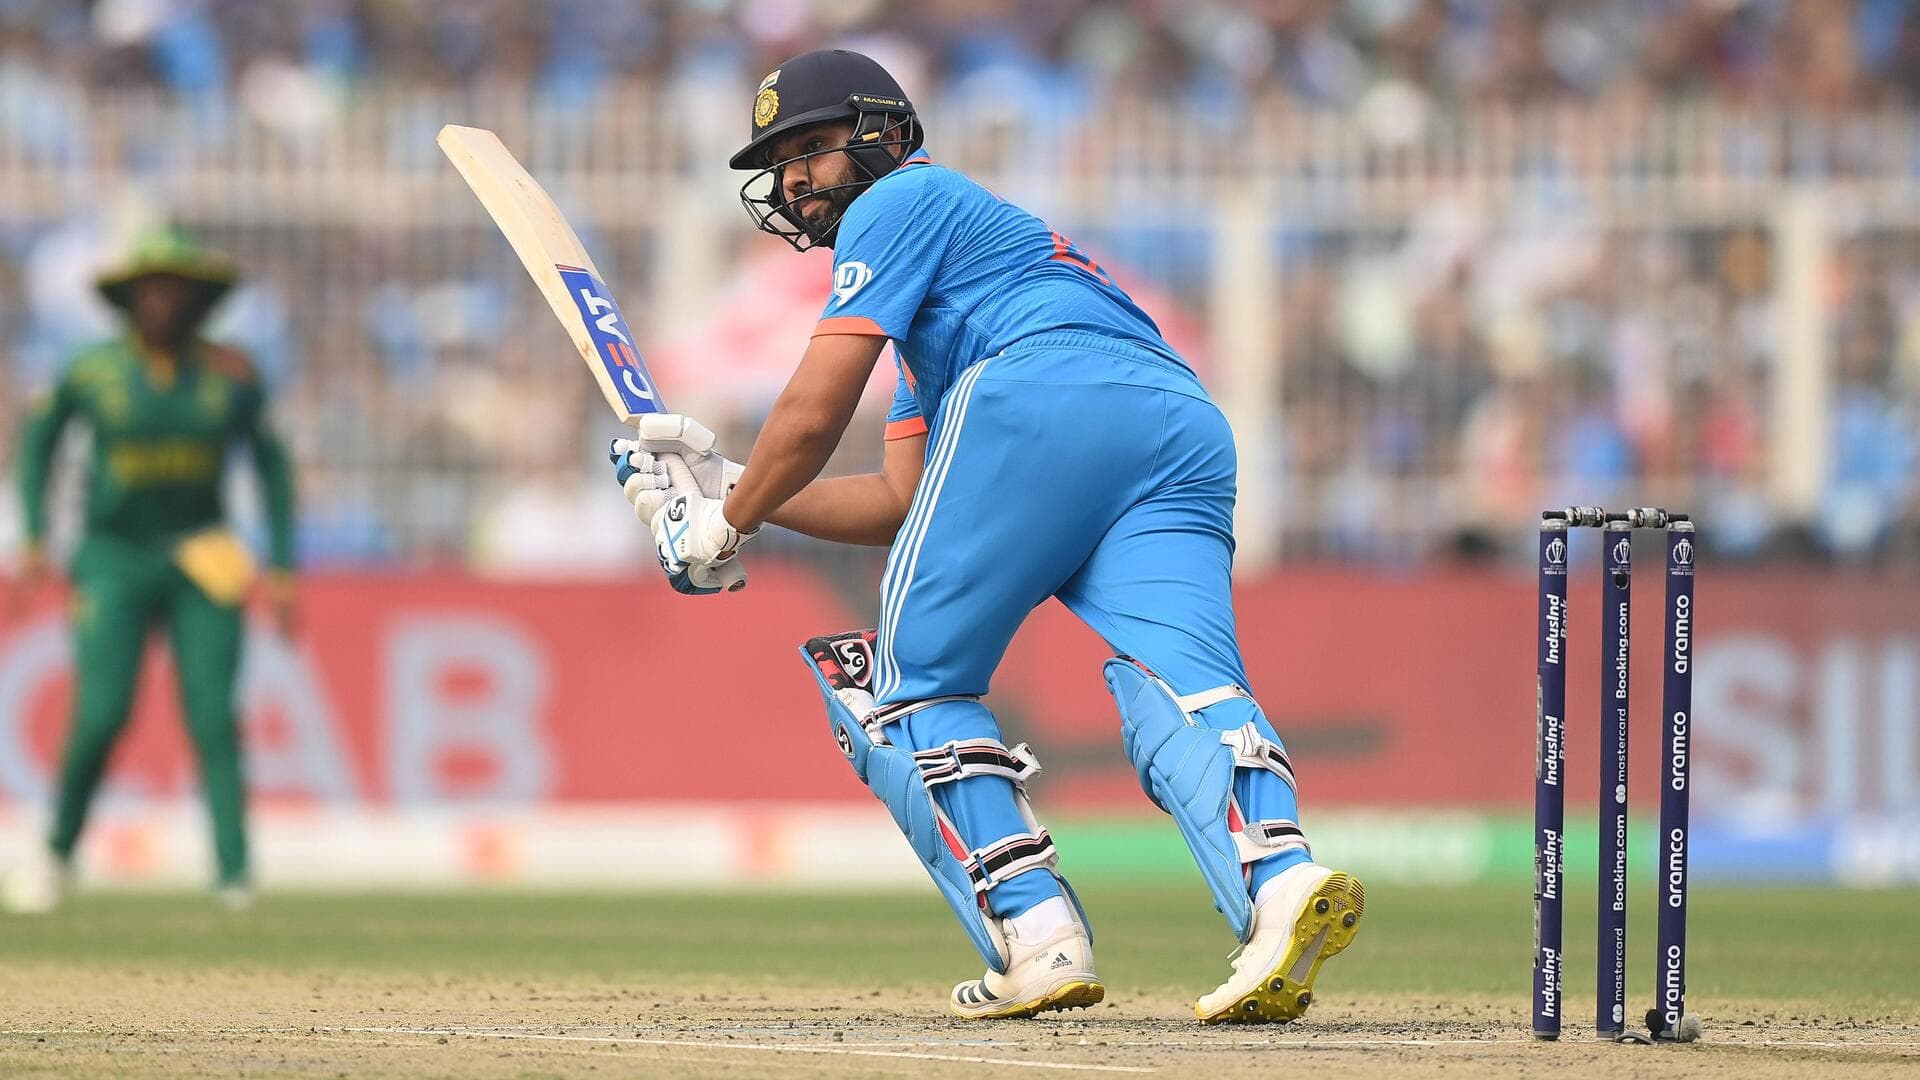 रोहित शर्मा हैं एक विश्व कप संस्करण में सबसे ज्यादा बाउंड्री लगाने वाले बल्लेबाज, जानिए आंकड़े